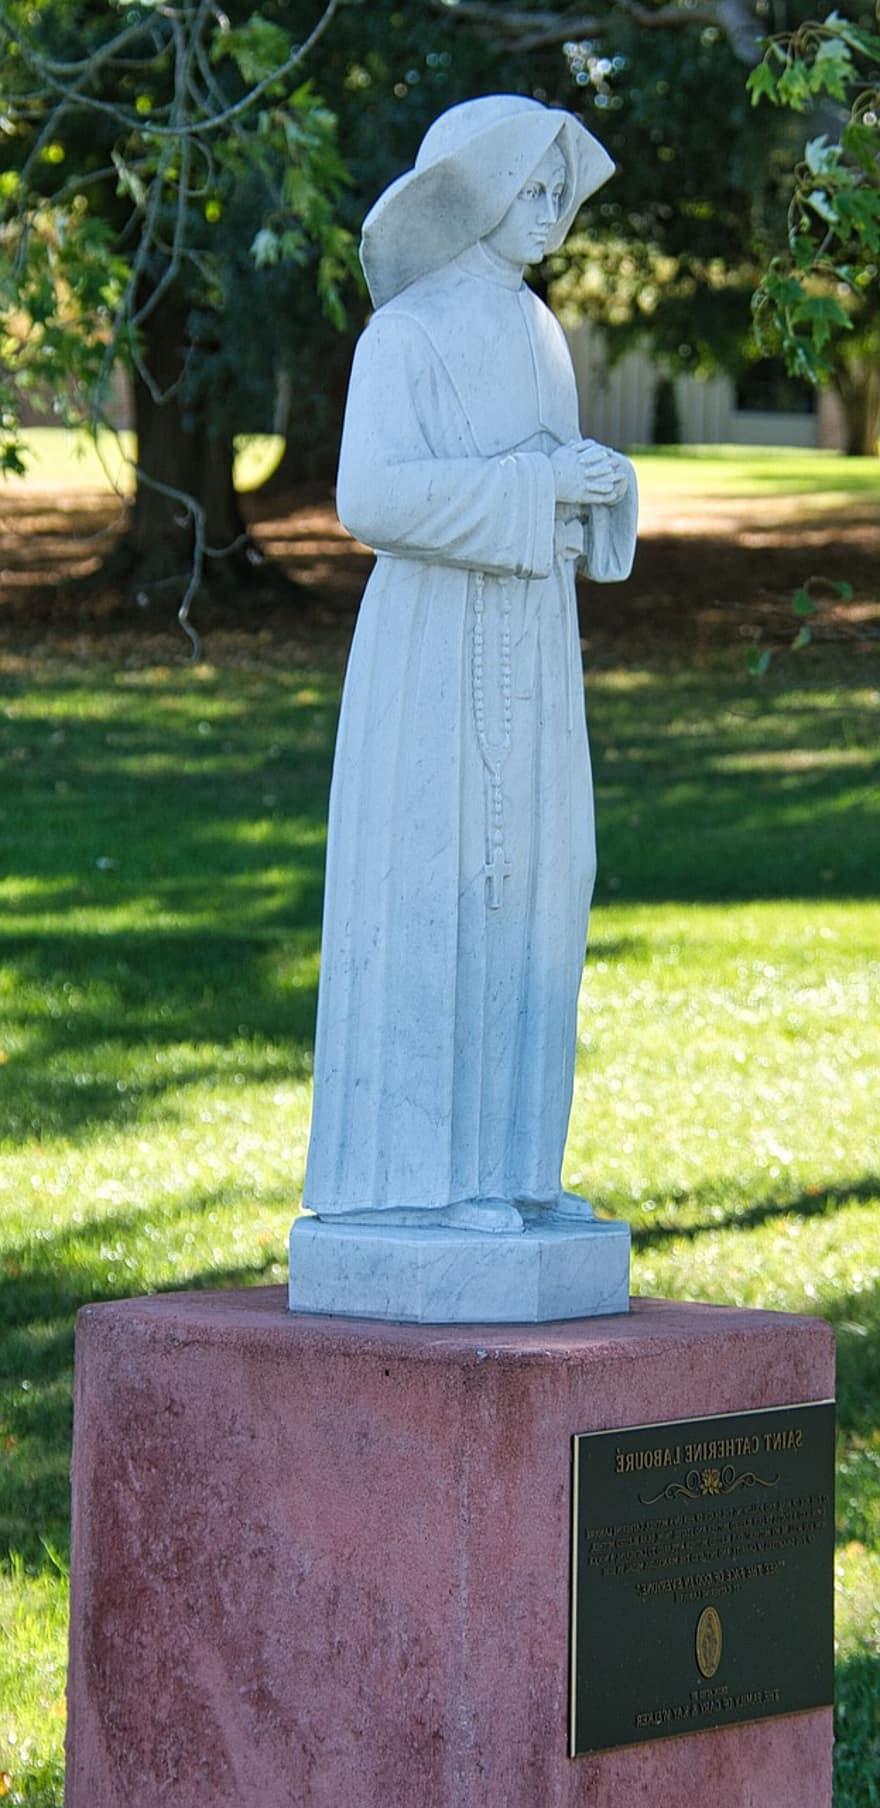 Estàtua de Santa, Escultura de Sant, religió, estàtua religiosa